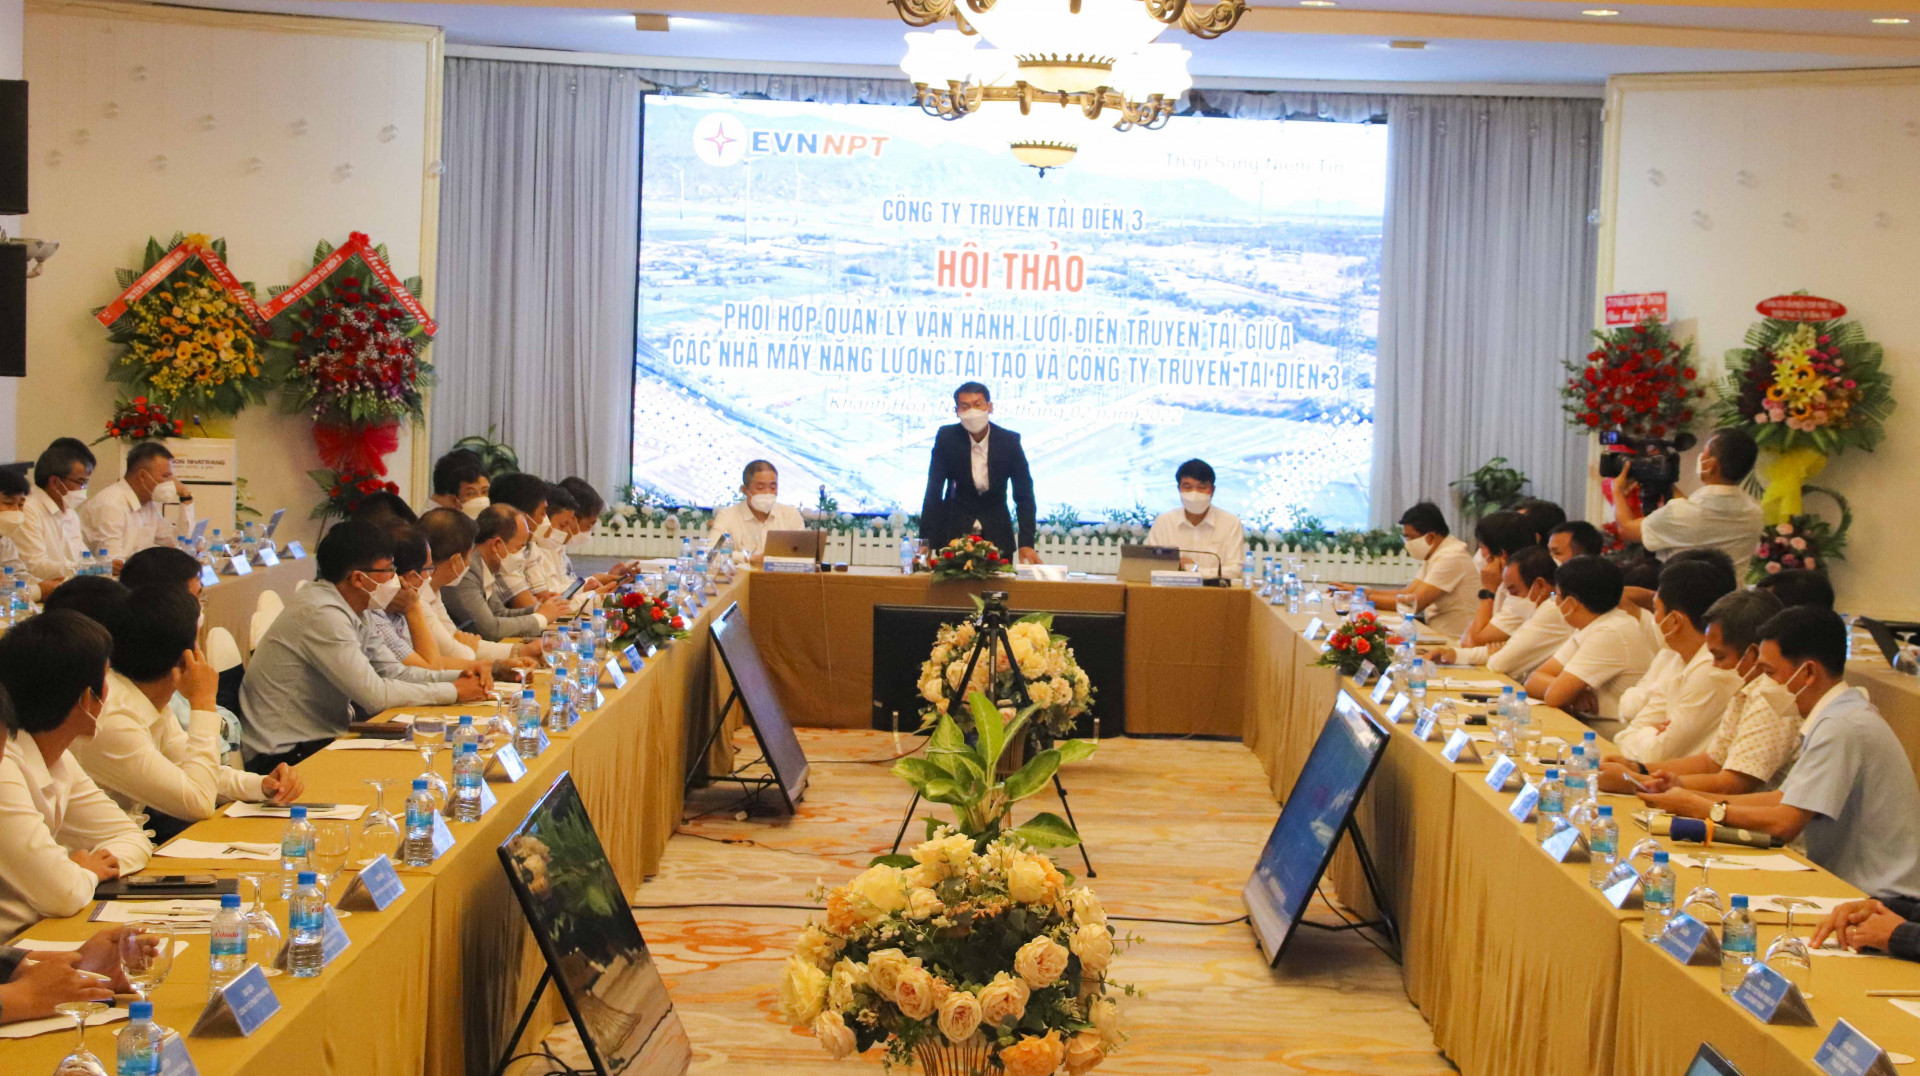 Ông Hồ Công - Phó Giám đốc Công ty Truyền tải Điện 3 kết luận hội thảo.